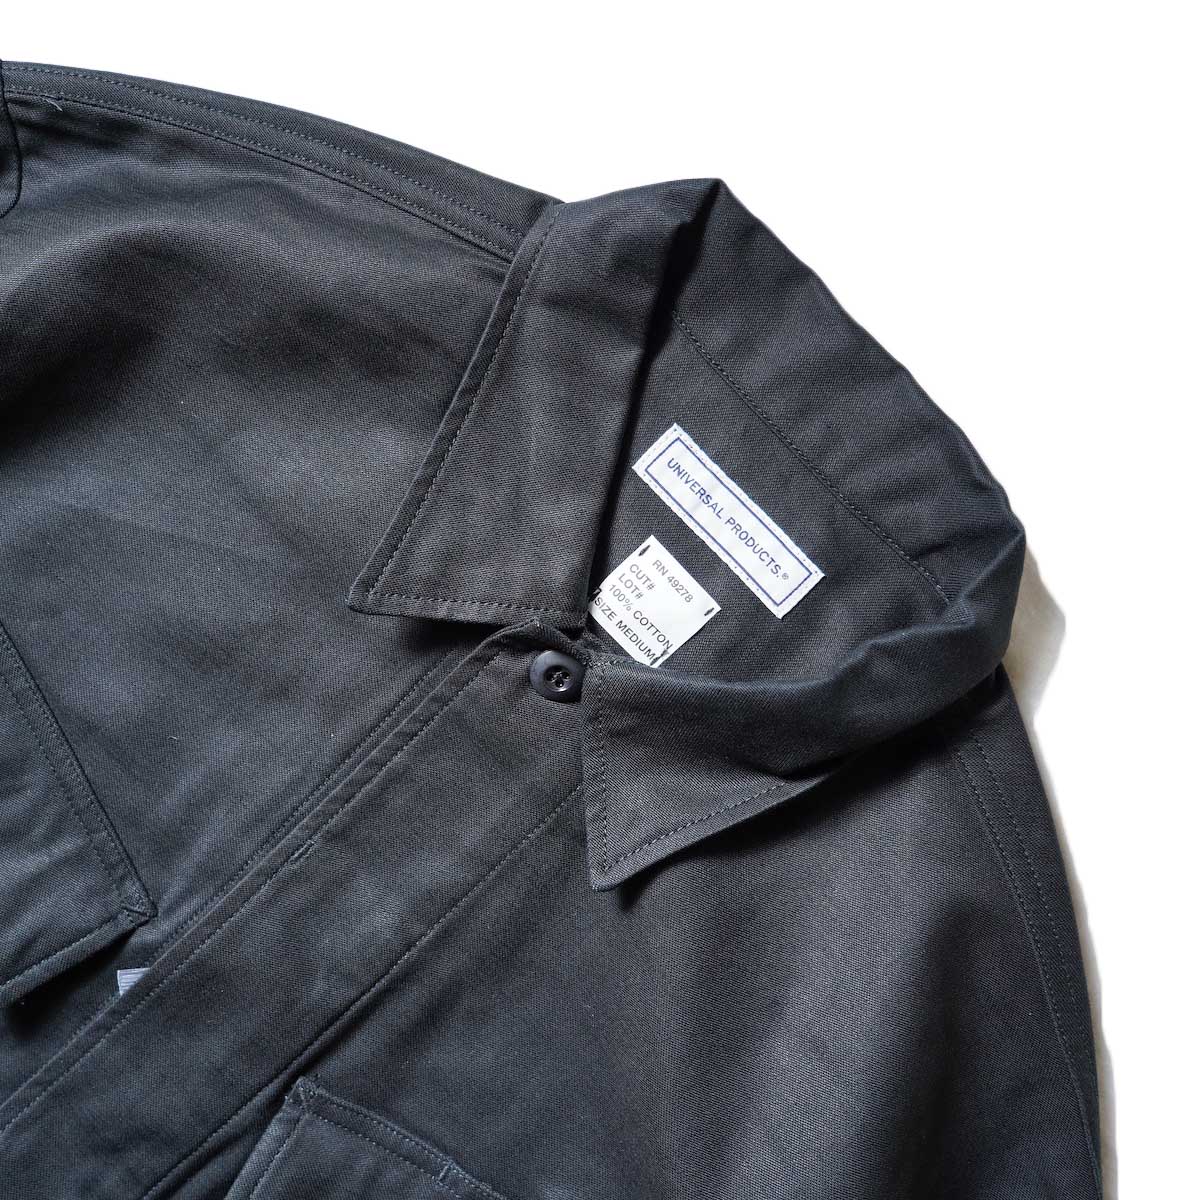 UNIVERSAL PRODUCTS / Gung Ho Fatigue Jacket (Black)ネック